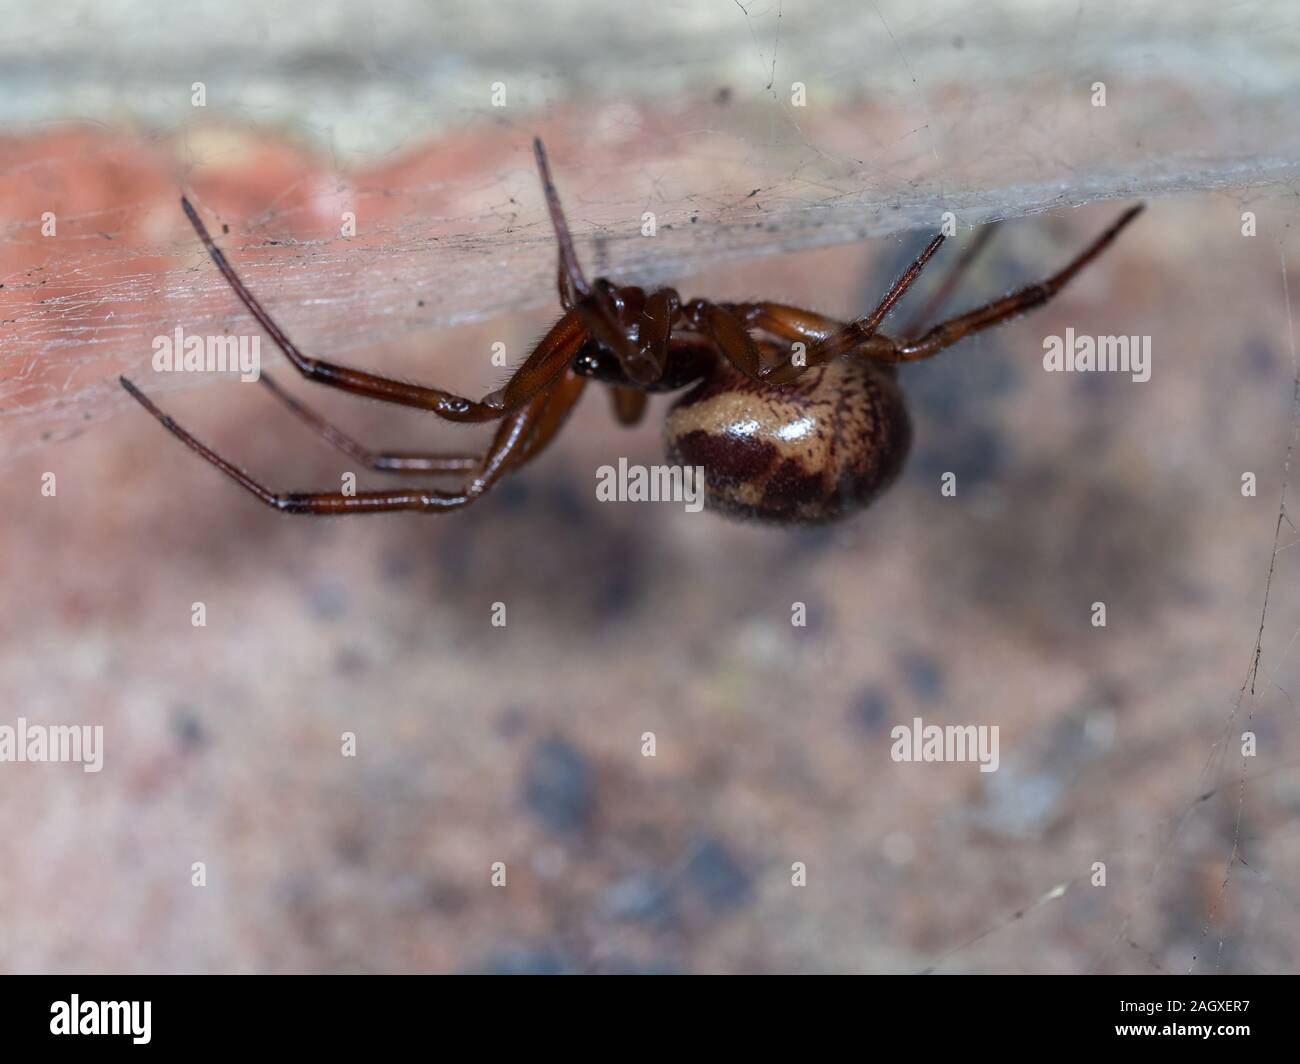 Nobile vedova falso spider su un sito web da un muro di casa. Scattata di notte. Foto Stock